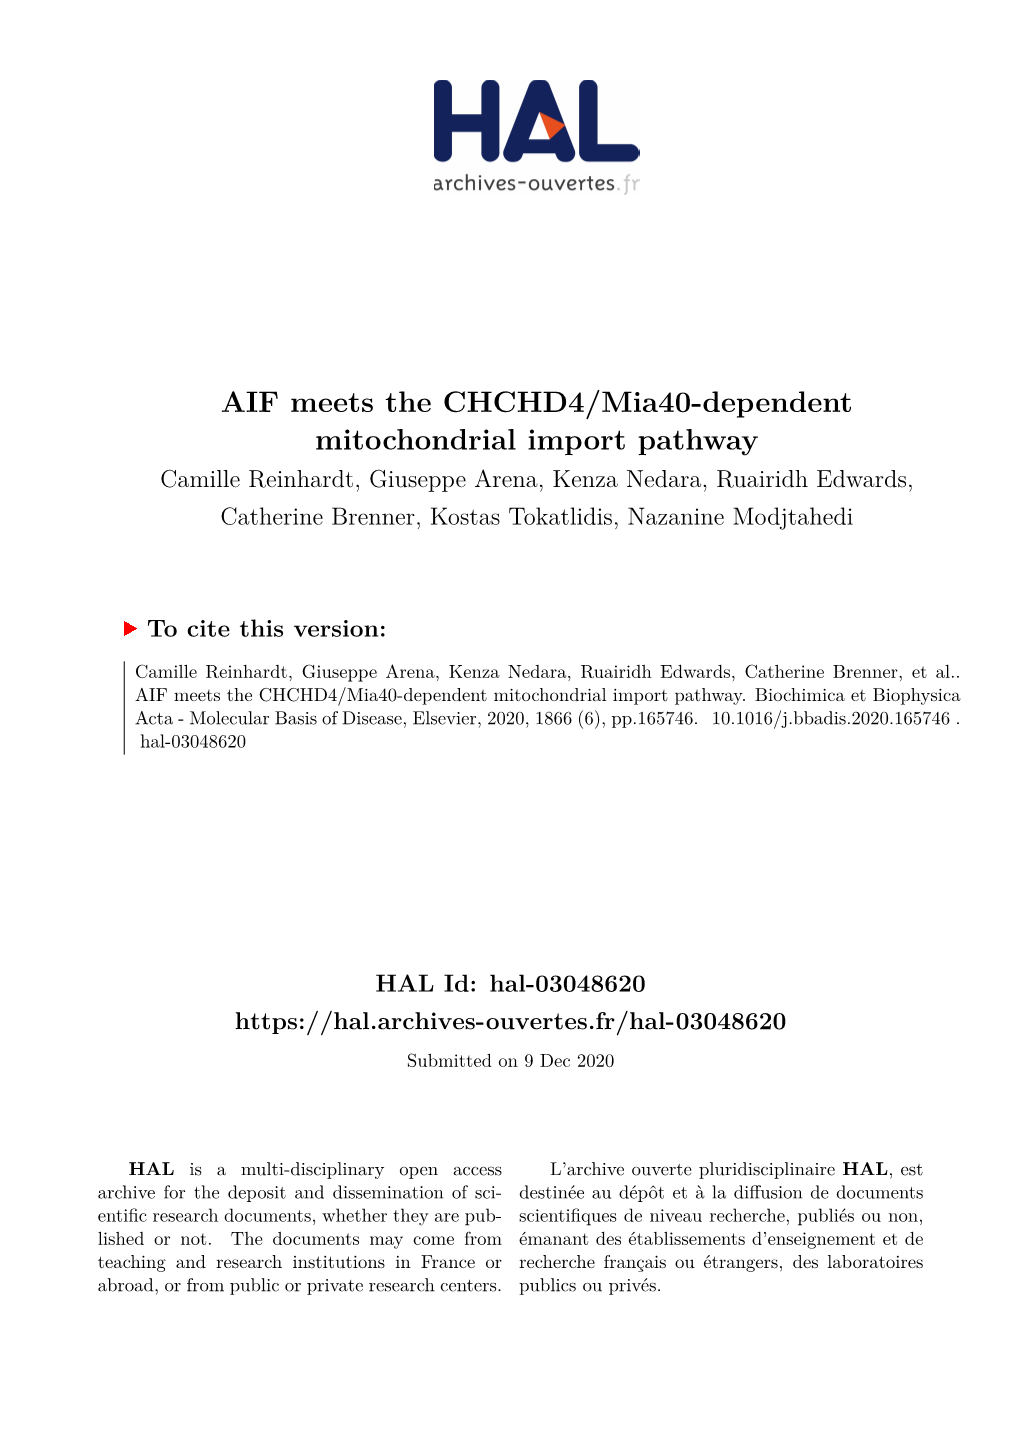 AIF Meets the CHCHD4/Mia40-Dependent